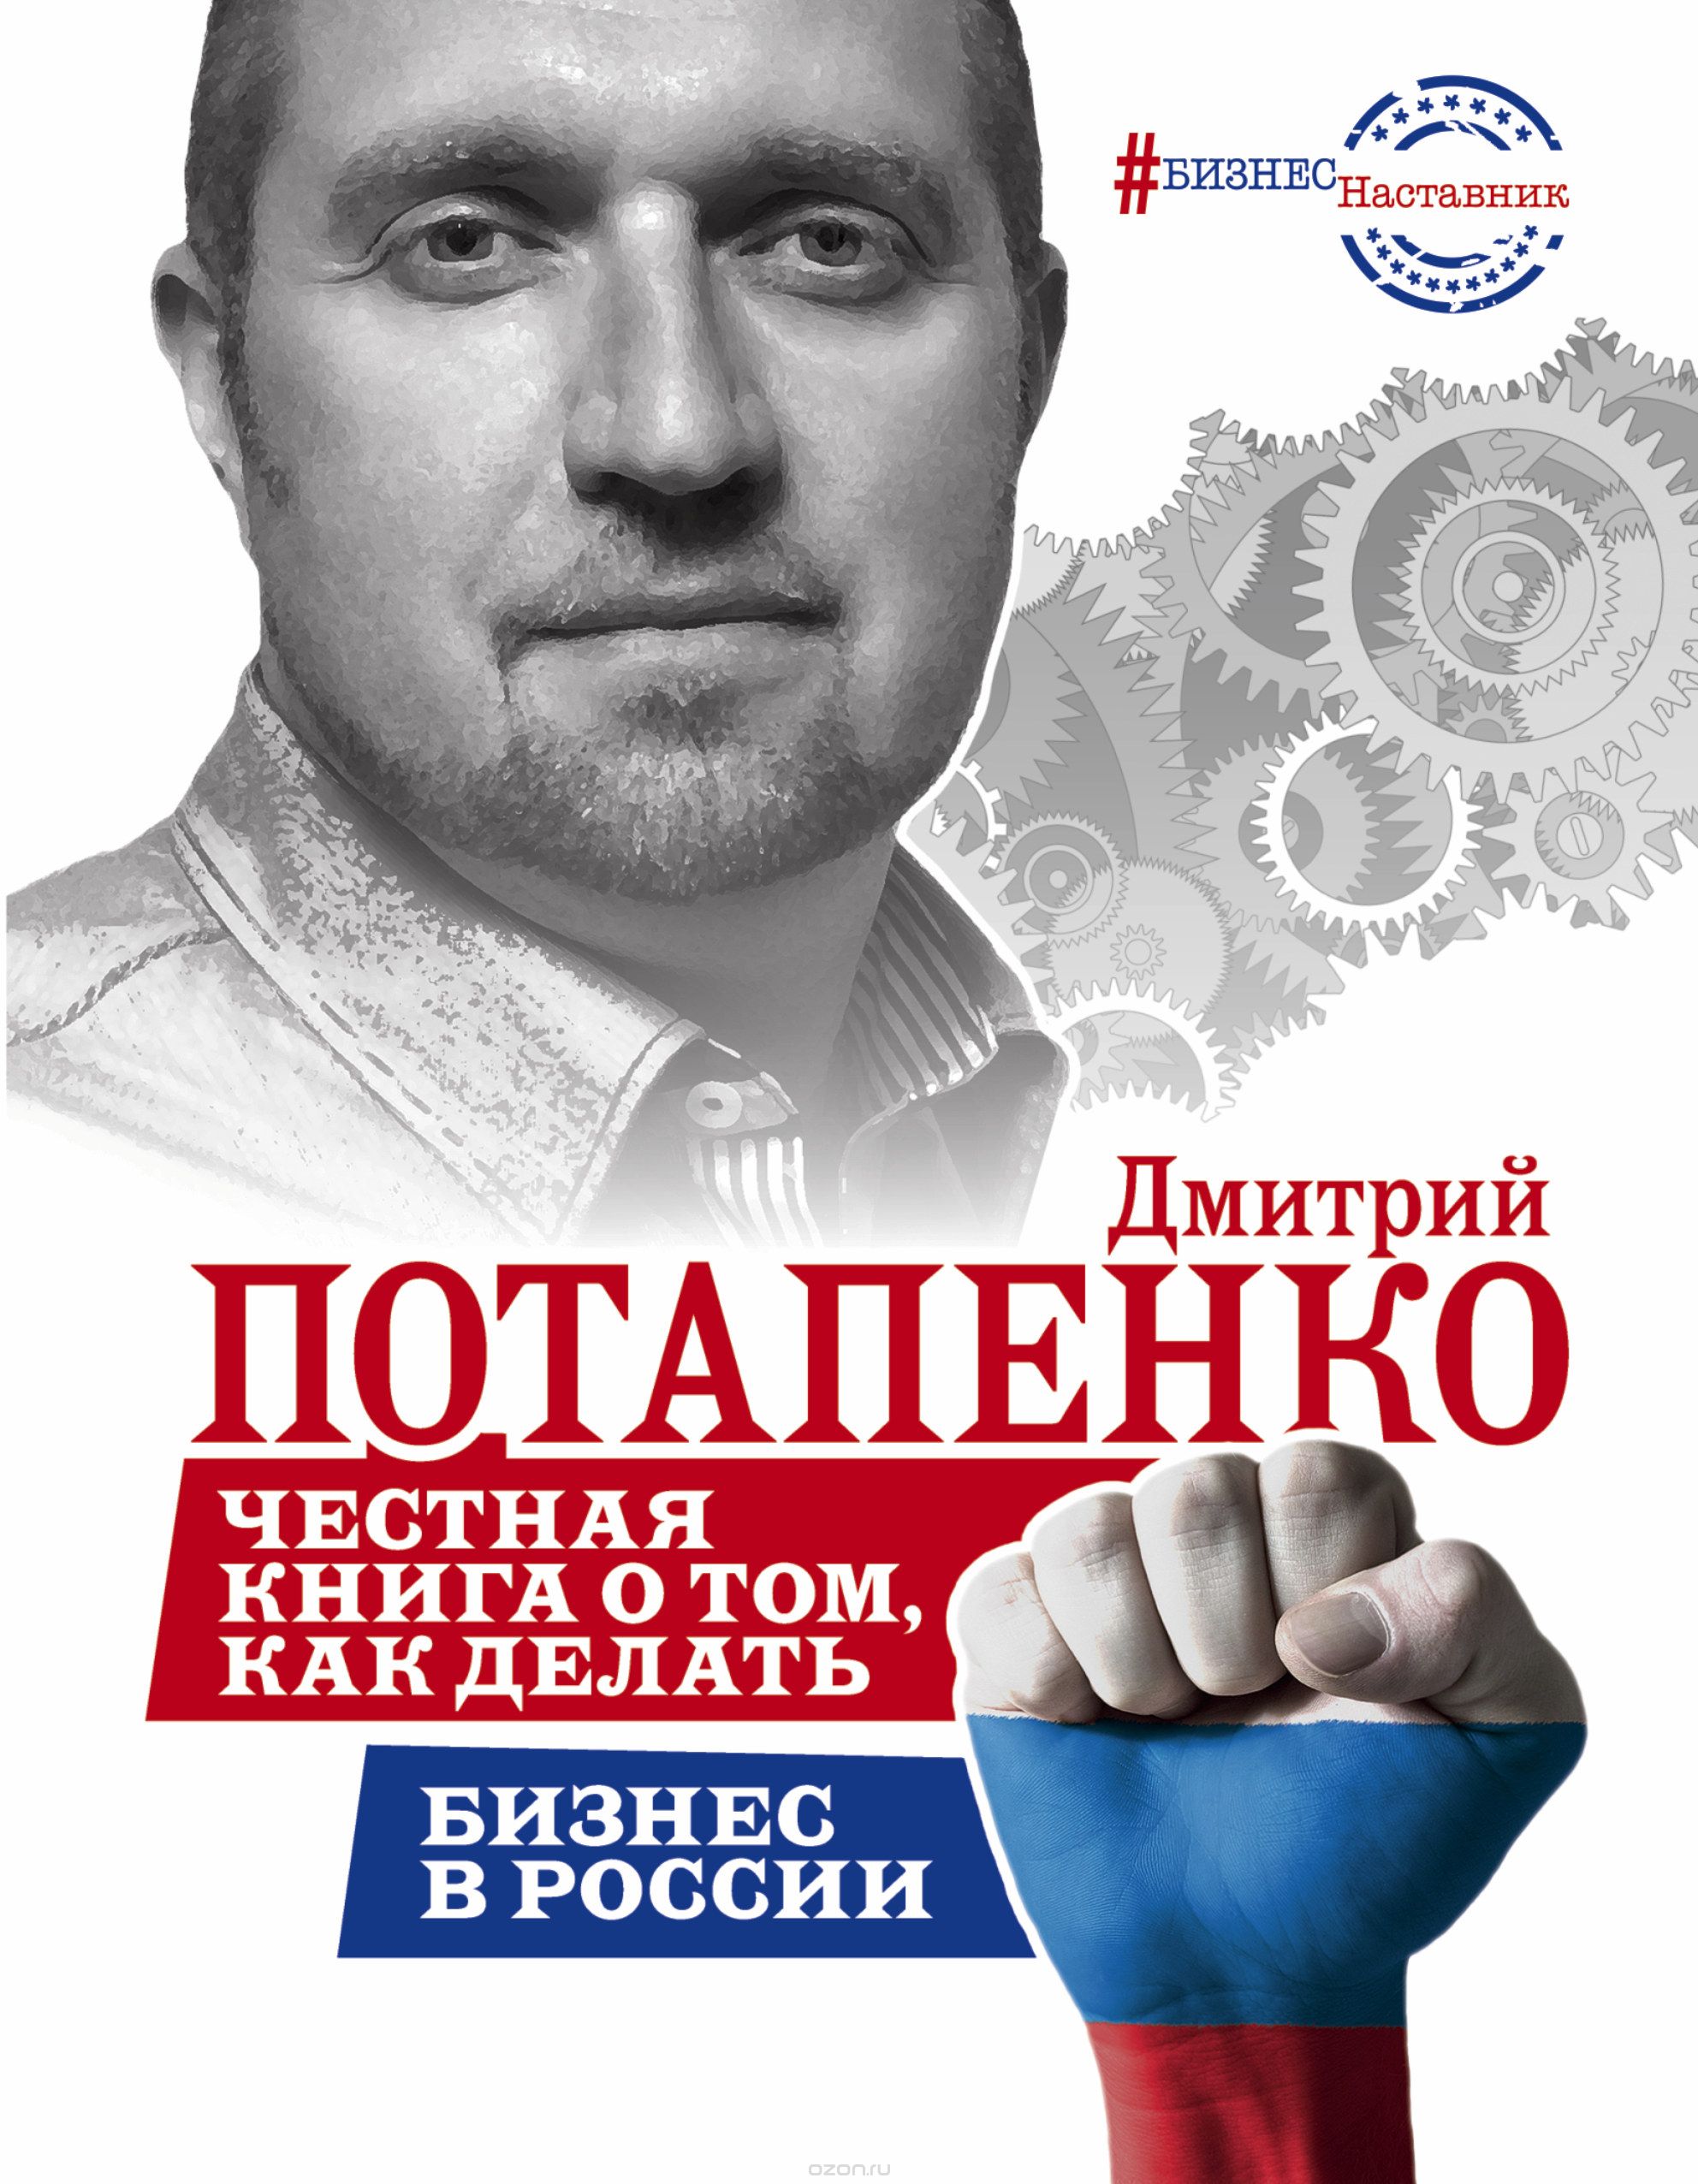 Скачать книгу "Честная книга о том, как делать бизнес в России, Дмитрий Потапенко"